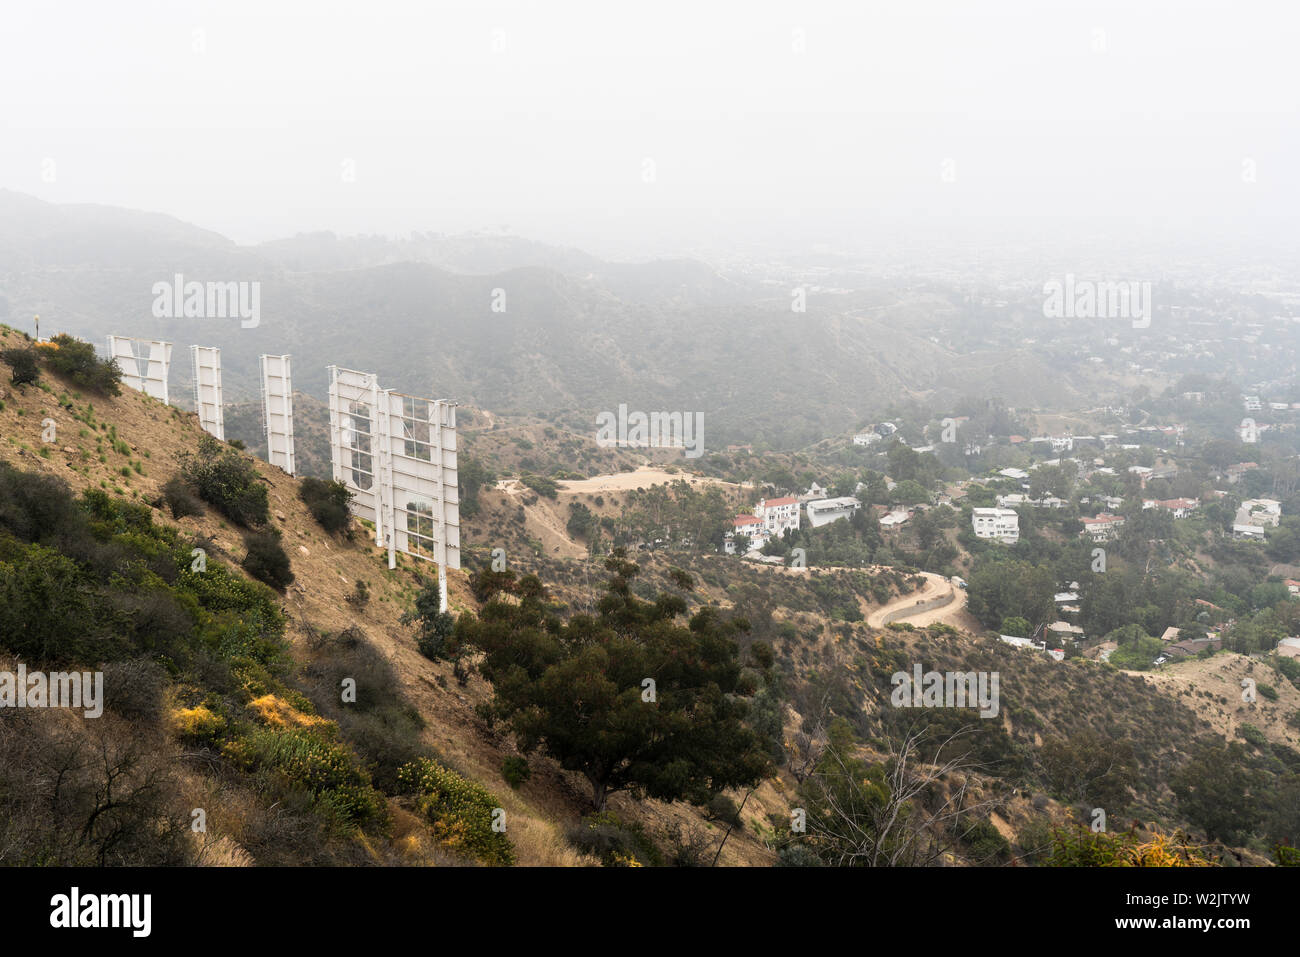 Los Angeles, Kalifornien, USA - 7. Juli 2019: nebeliger Morgen Blick auf den berühmten Hollywood Zeichen und Häuser am Hang in der Nähe von beliebten Griffith Park. Stockfoto